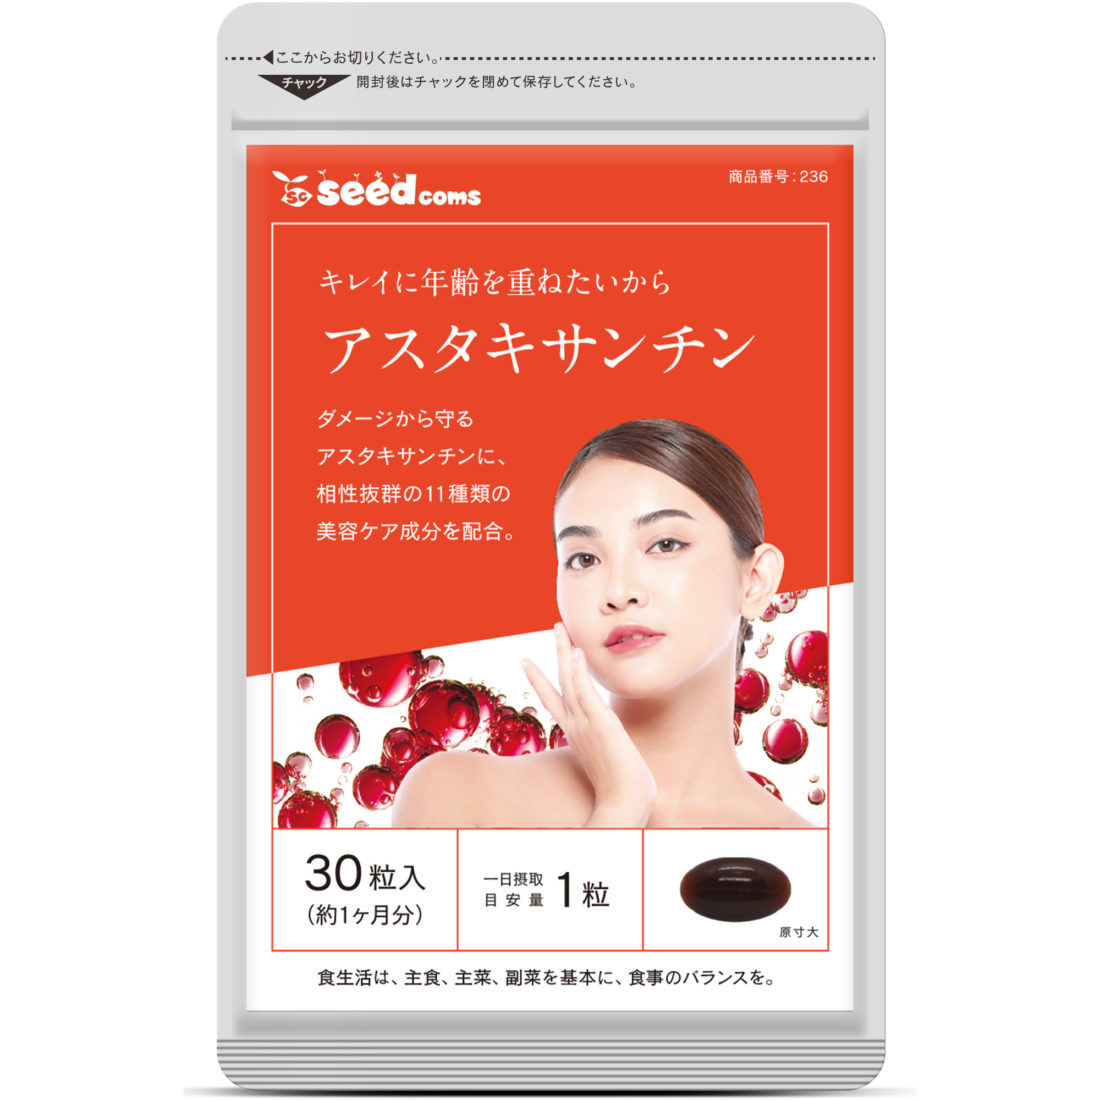 Viên Uống Bổ Sung Astaxanthin Giúp Ngăn Ngừa Lão Hoá Seedcoms Nhật Bản